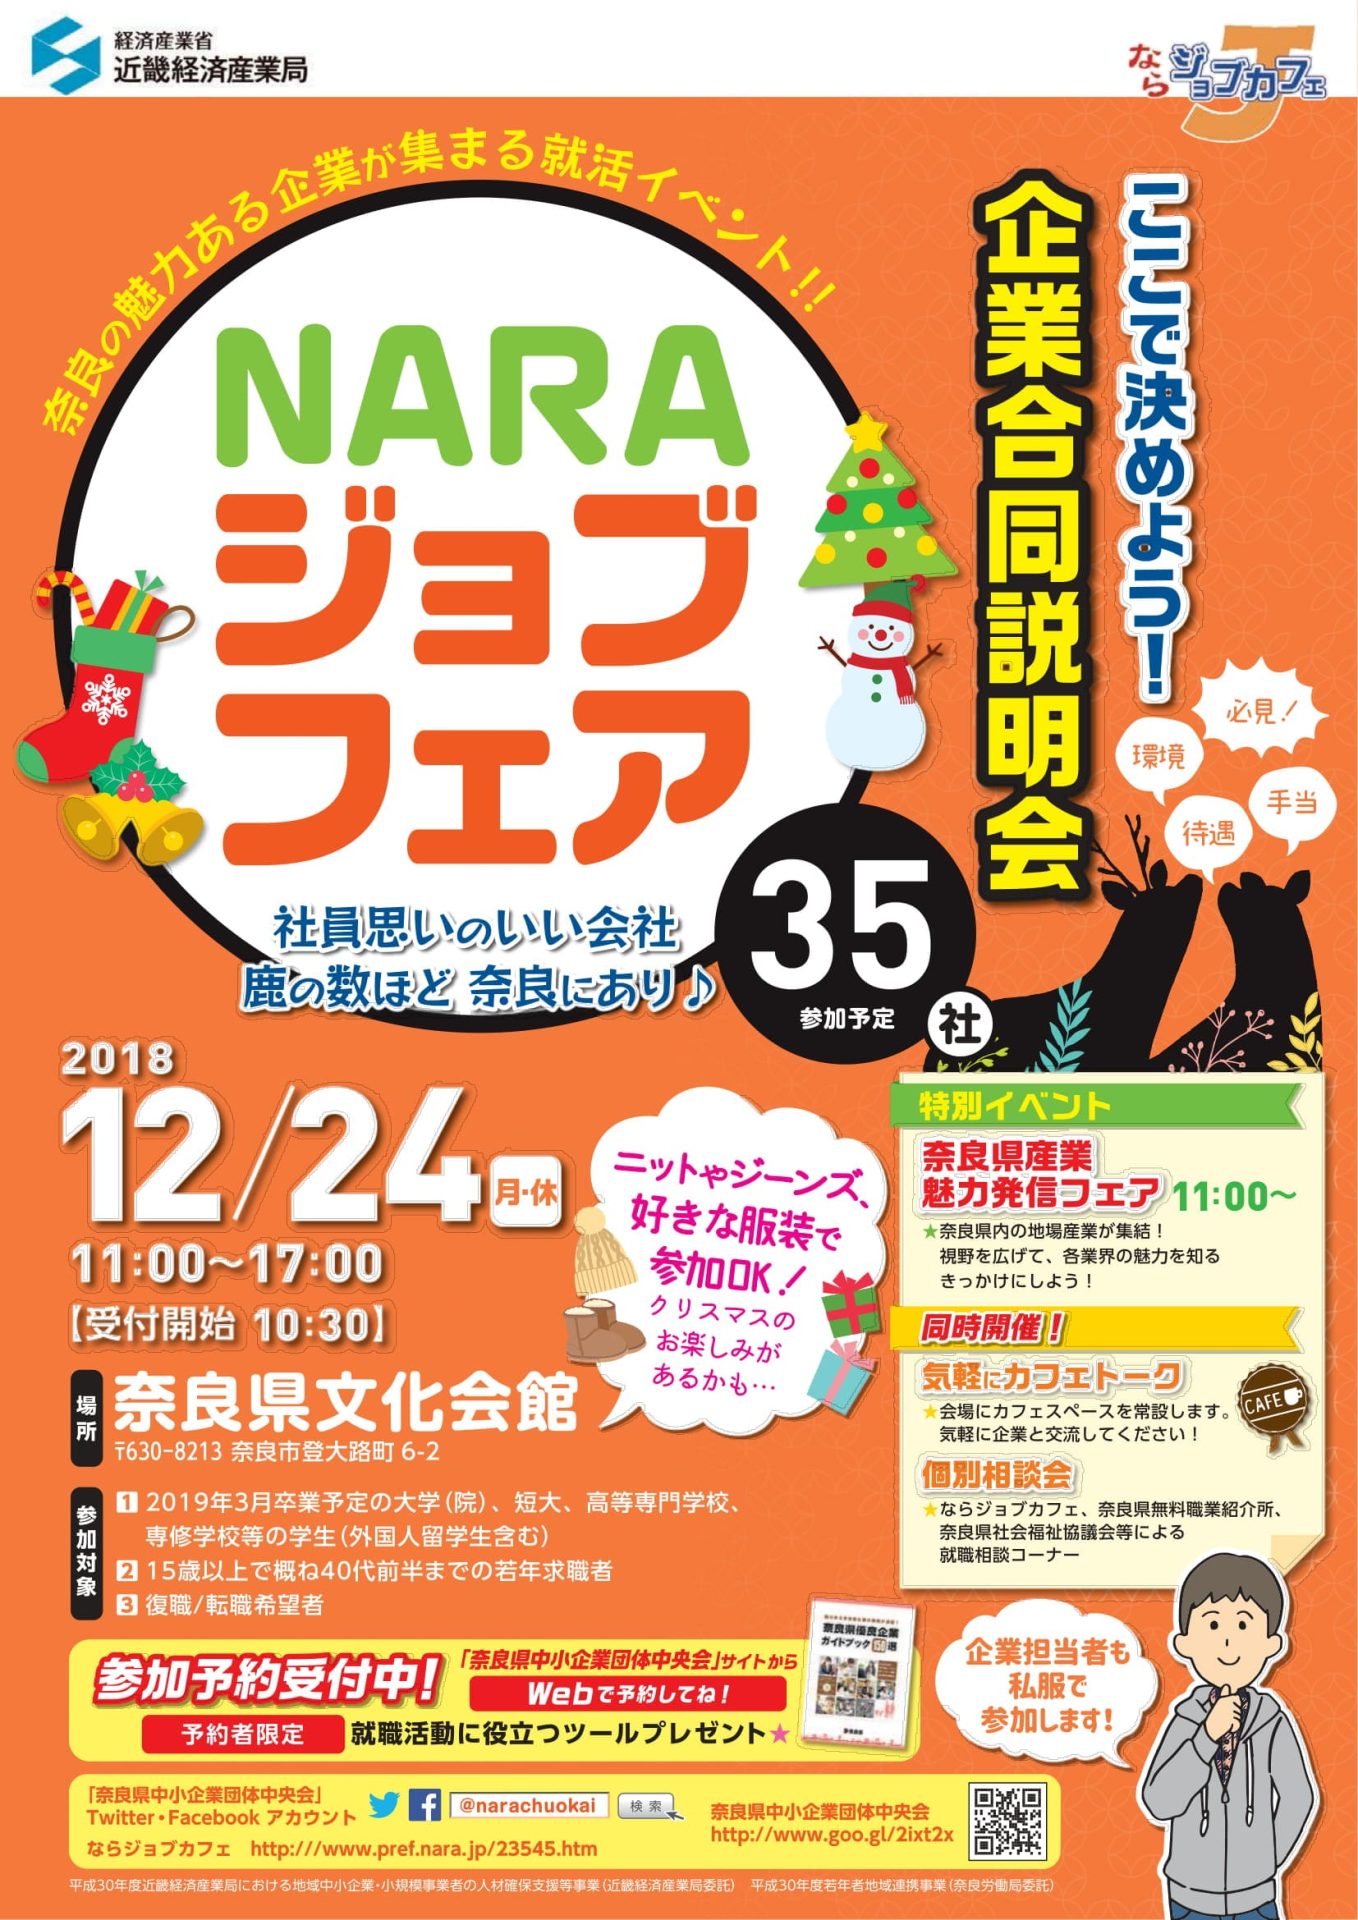 【奈良県】NARAジョブフェア 企業合同説明会(35社参加予定) | 移住関連イベント情報